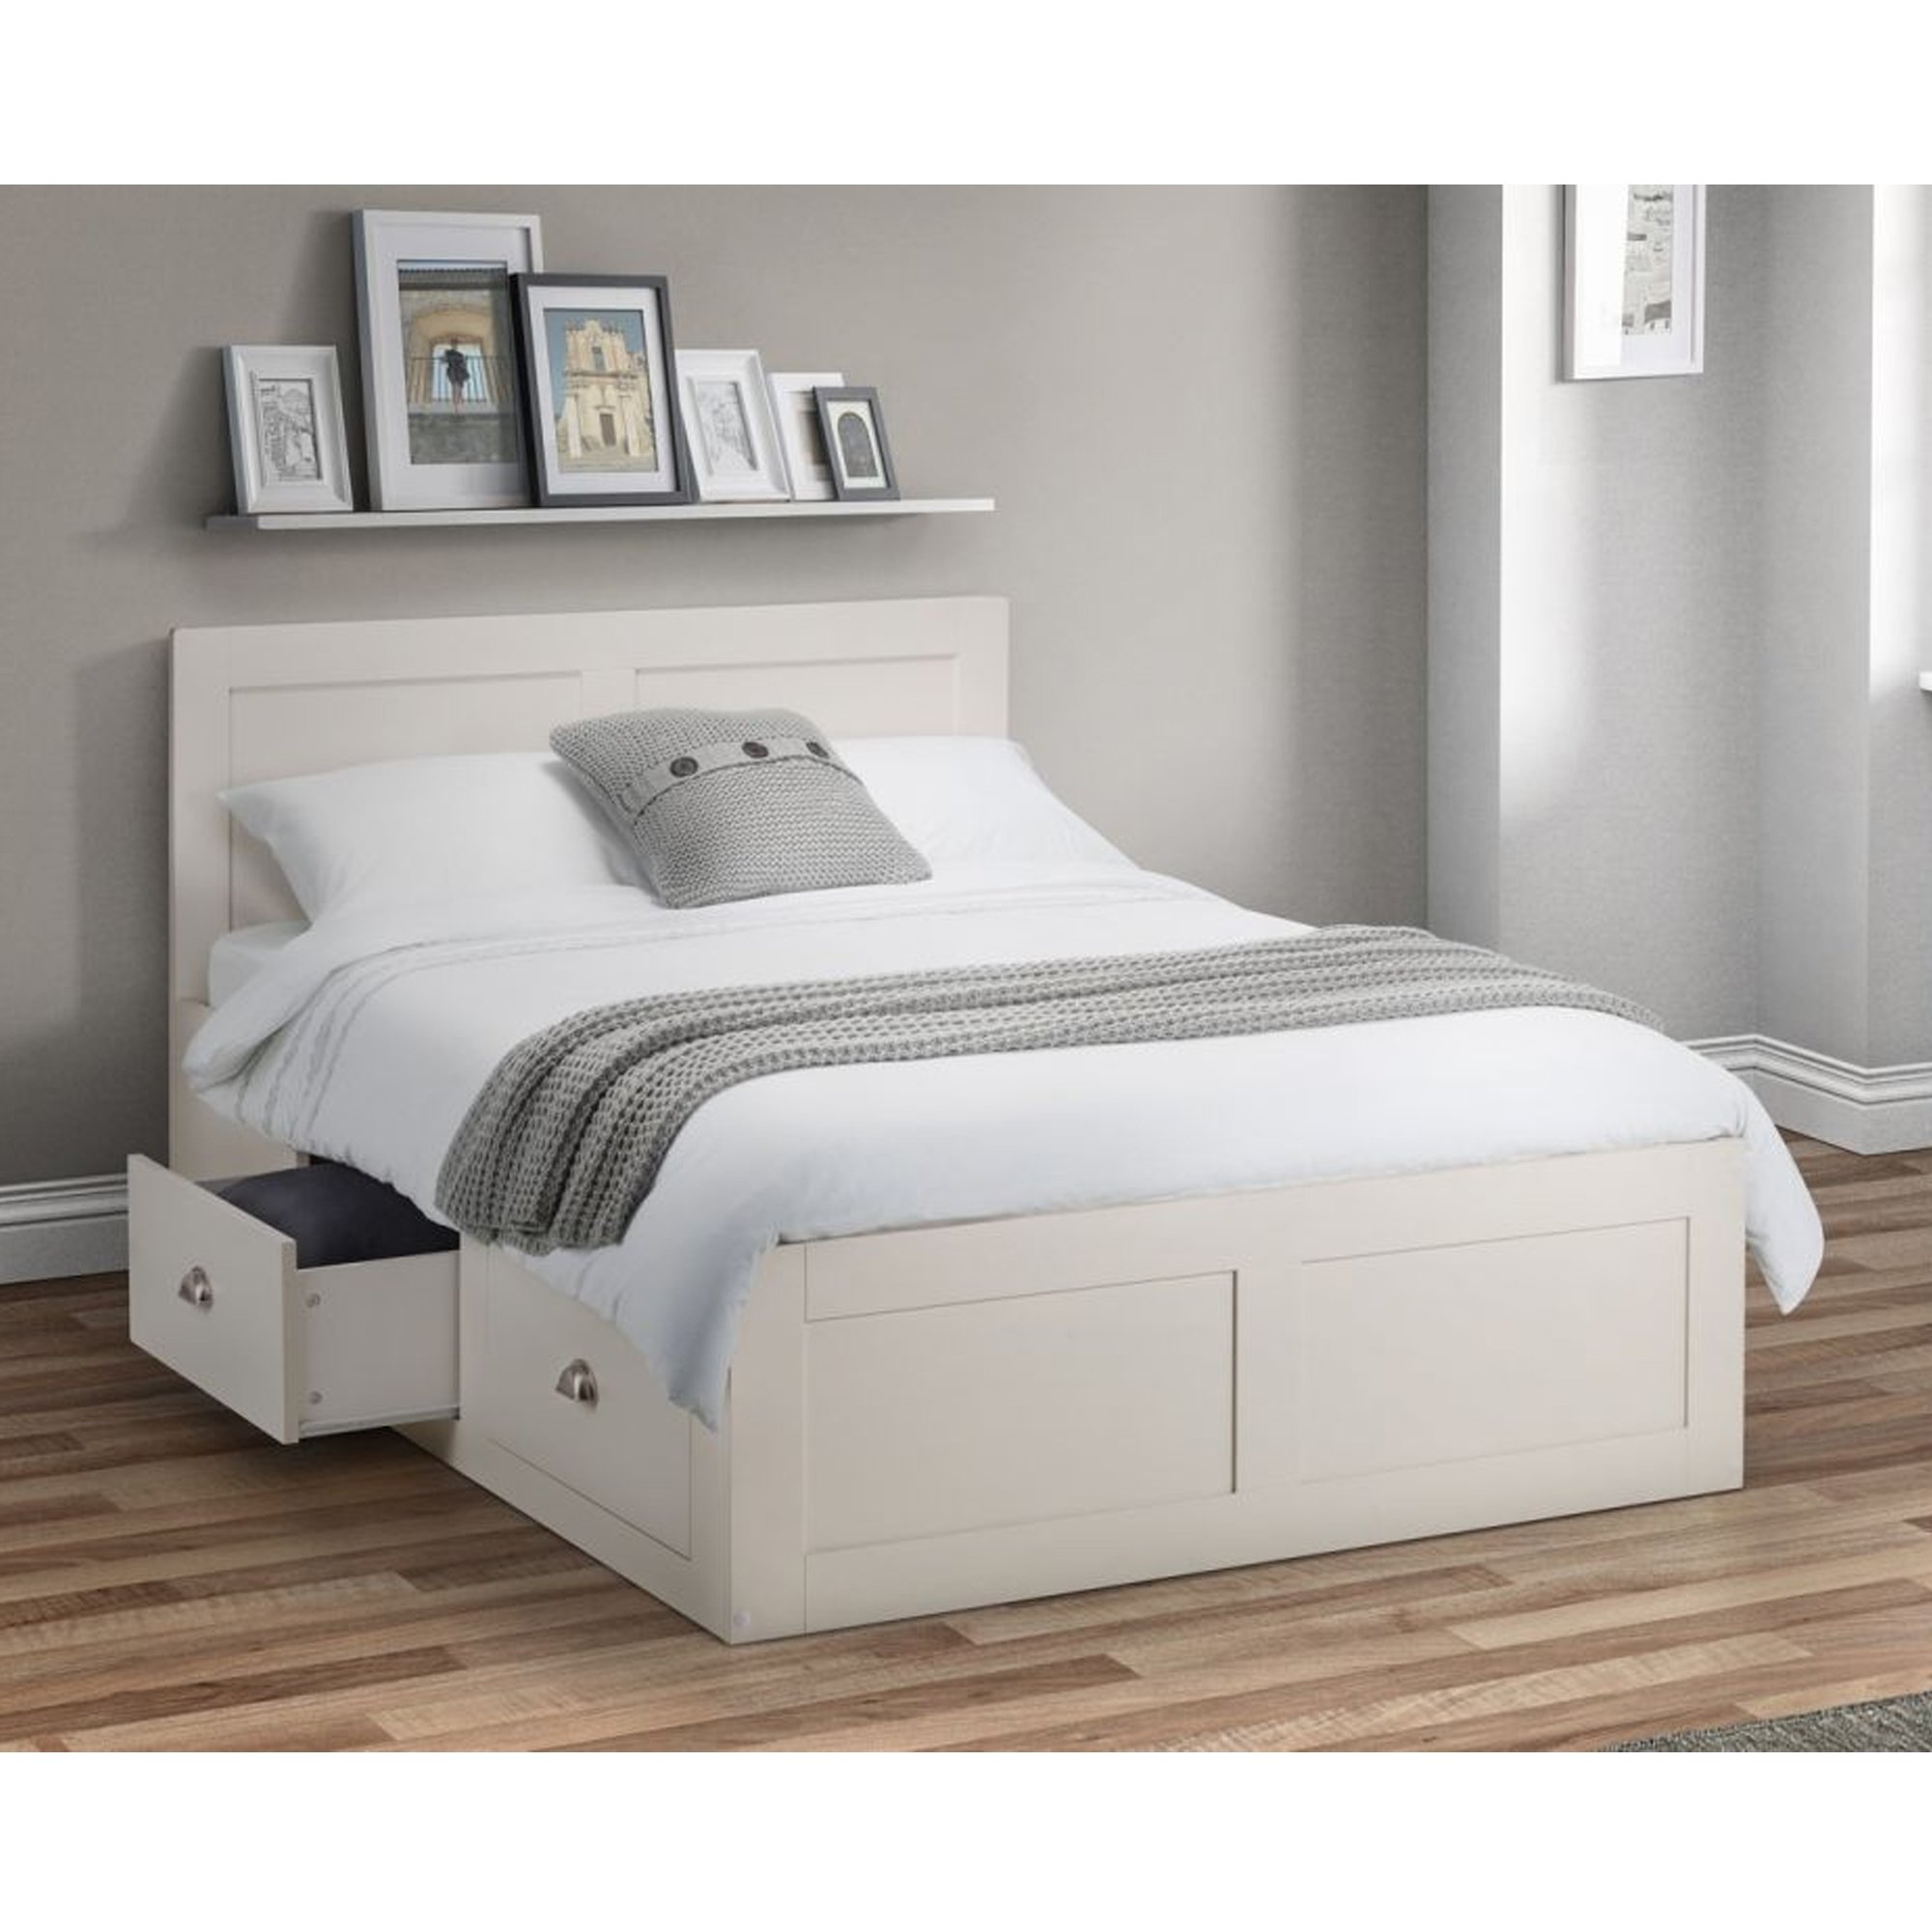 Мебель полуторка. Кровать полуторка белая икеа. Кровать икеа полуторка. Кровать полуторка 120х200. Кровать «Wooden Bed»-4 160*80см подростковая.